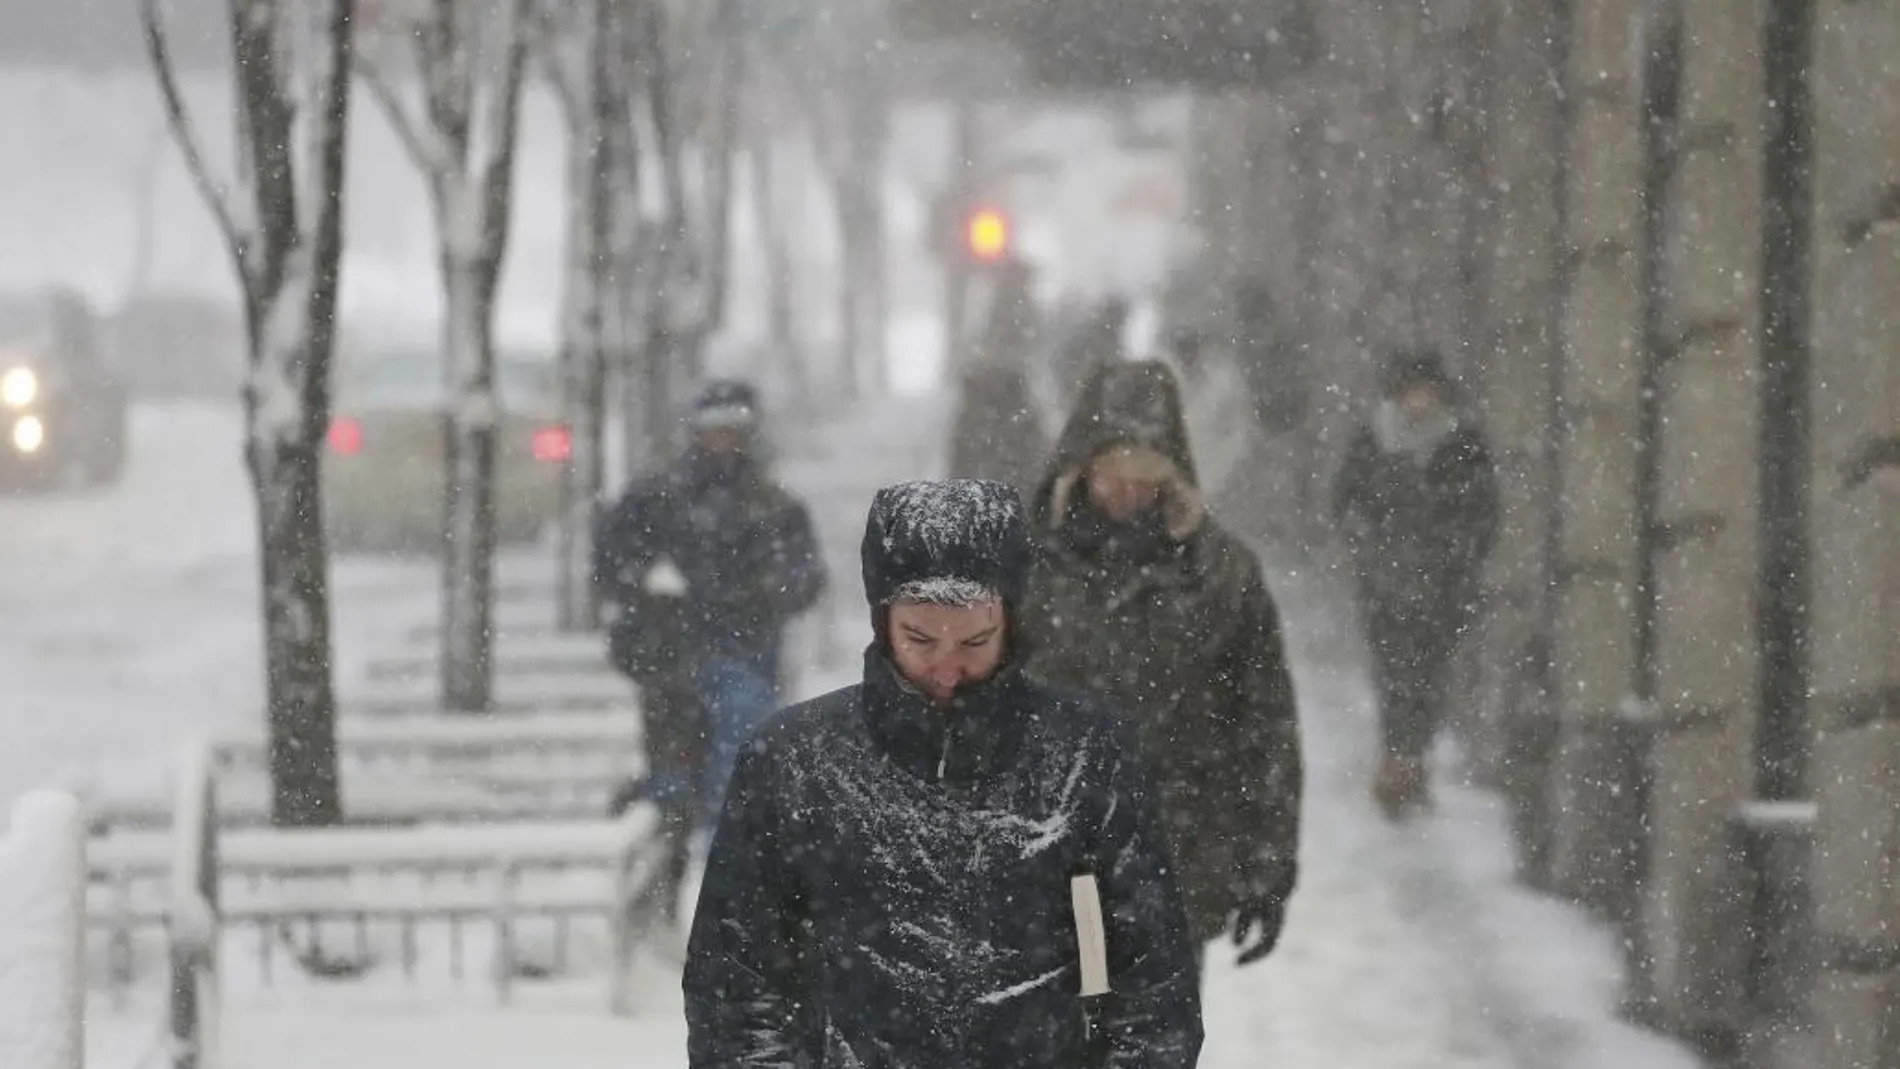 Varias personas caminan bajo la nieve en Nueva York